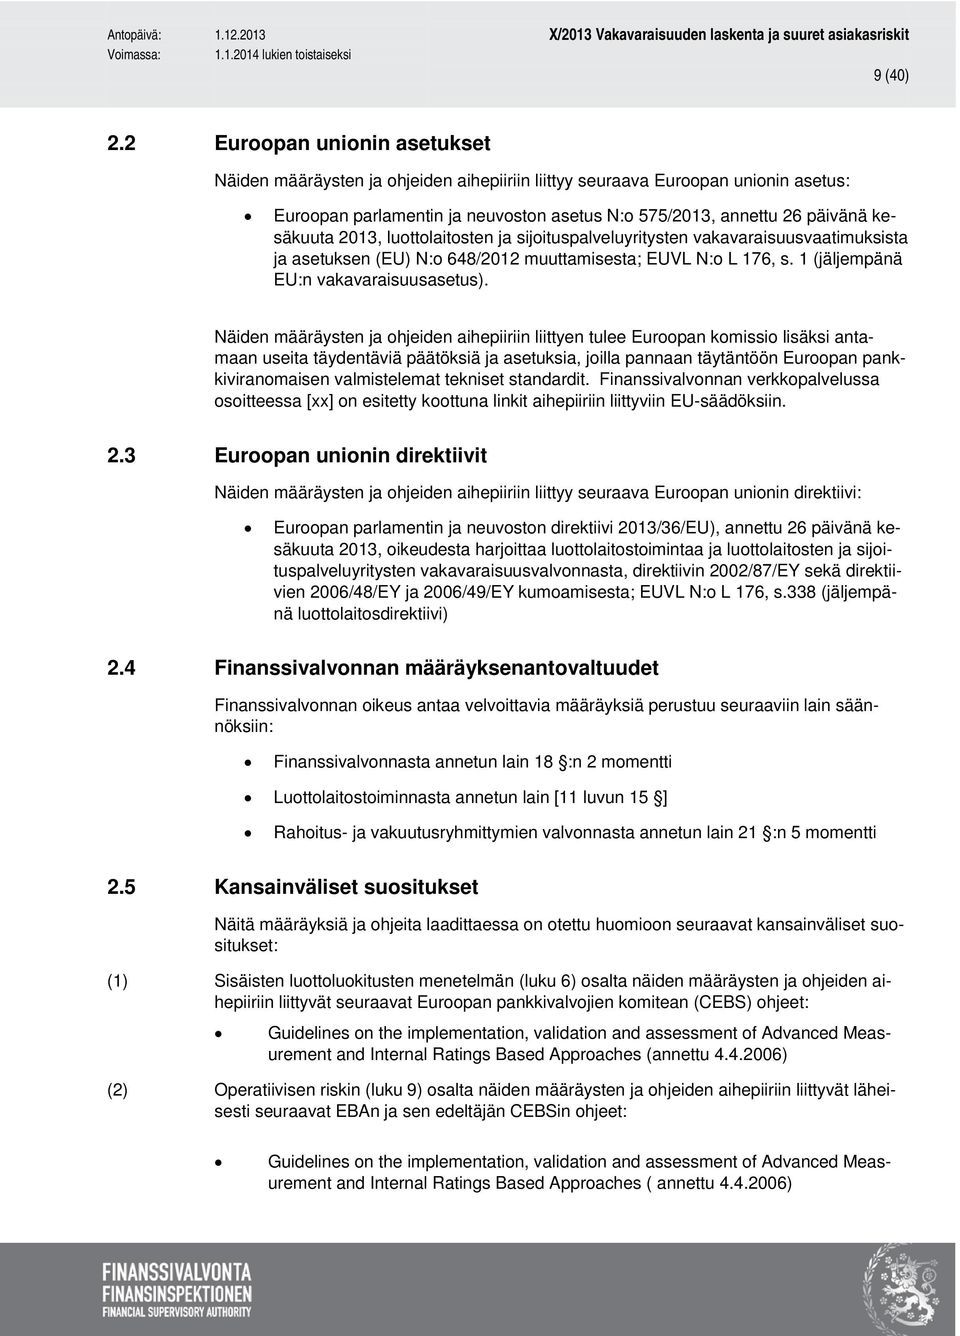 2013, luottolaitosten ja sijoituspalveluyritysten vakavaraisuusvaatimuksista ja asetuksen (EU) N:o 648/2012 muuttamisesta; EUVL N:o L 176, s. 1 (jäljempänä EU:n vakavaraisuusasetus).